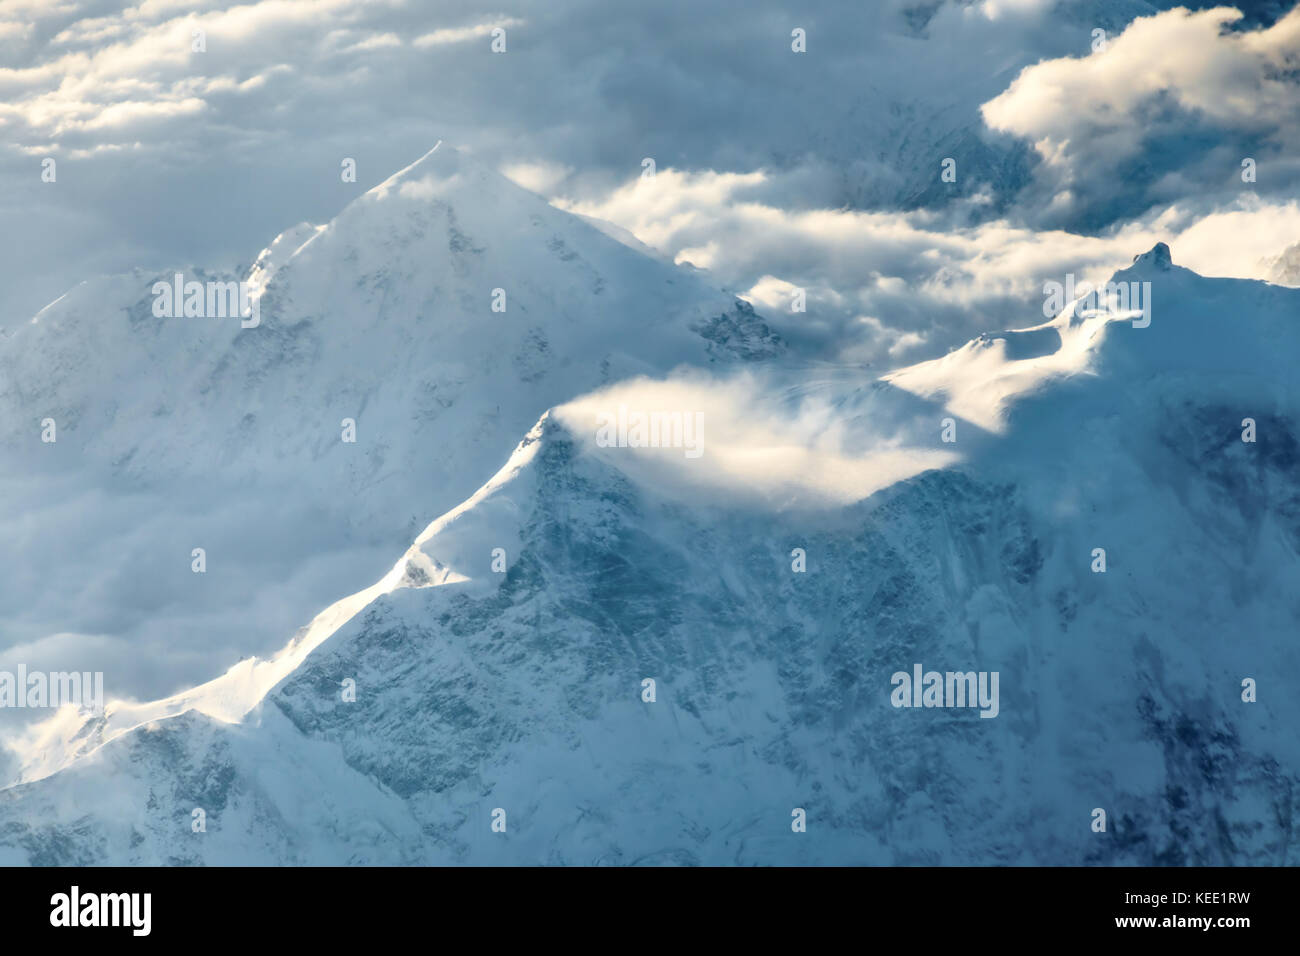 Die schneebedeckten Gipfel der Berge in den Wolken. Blick von oben. Stockfoto